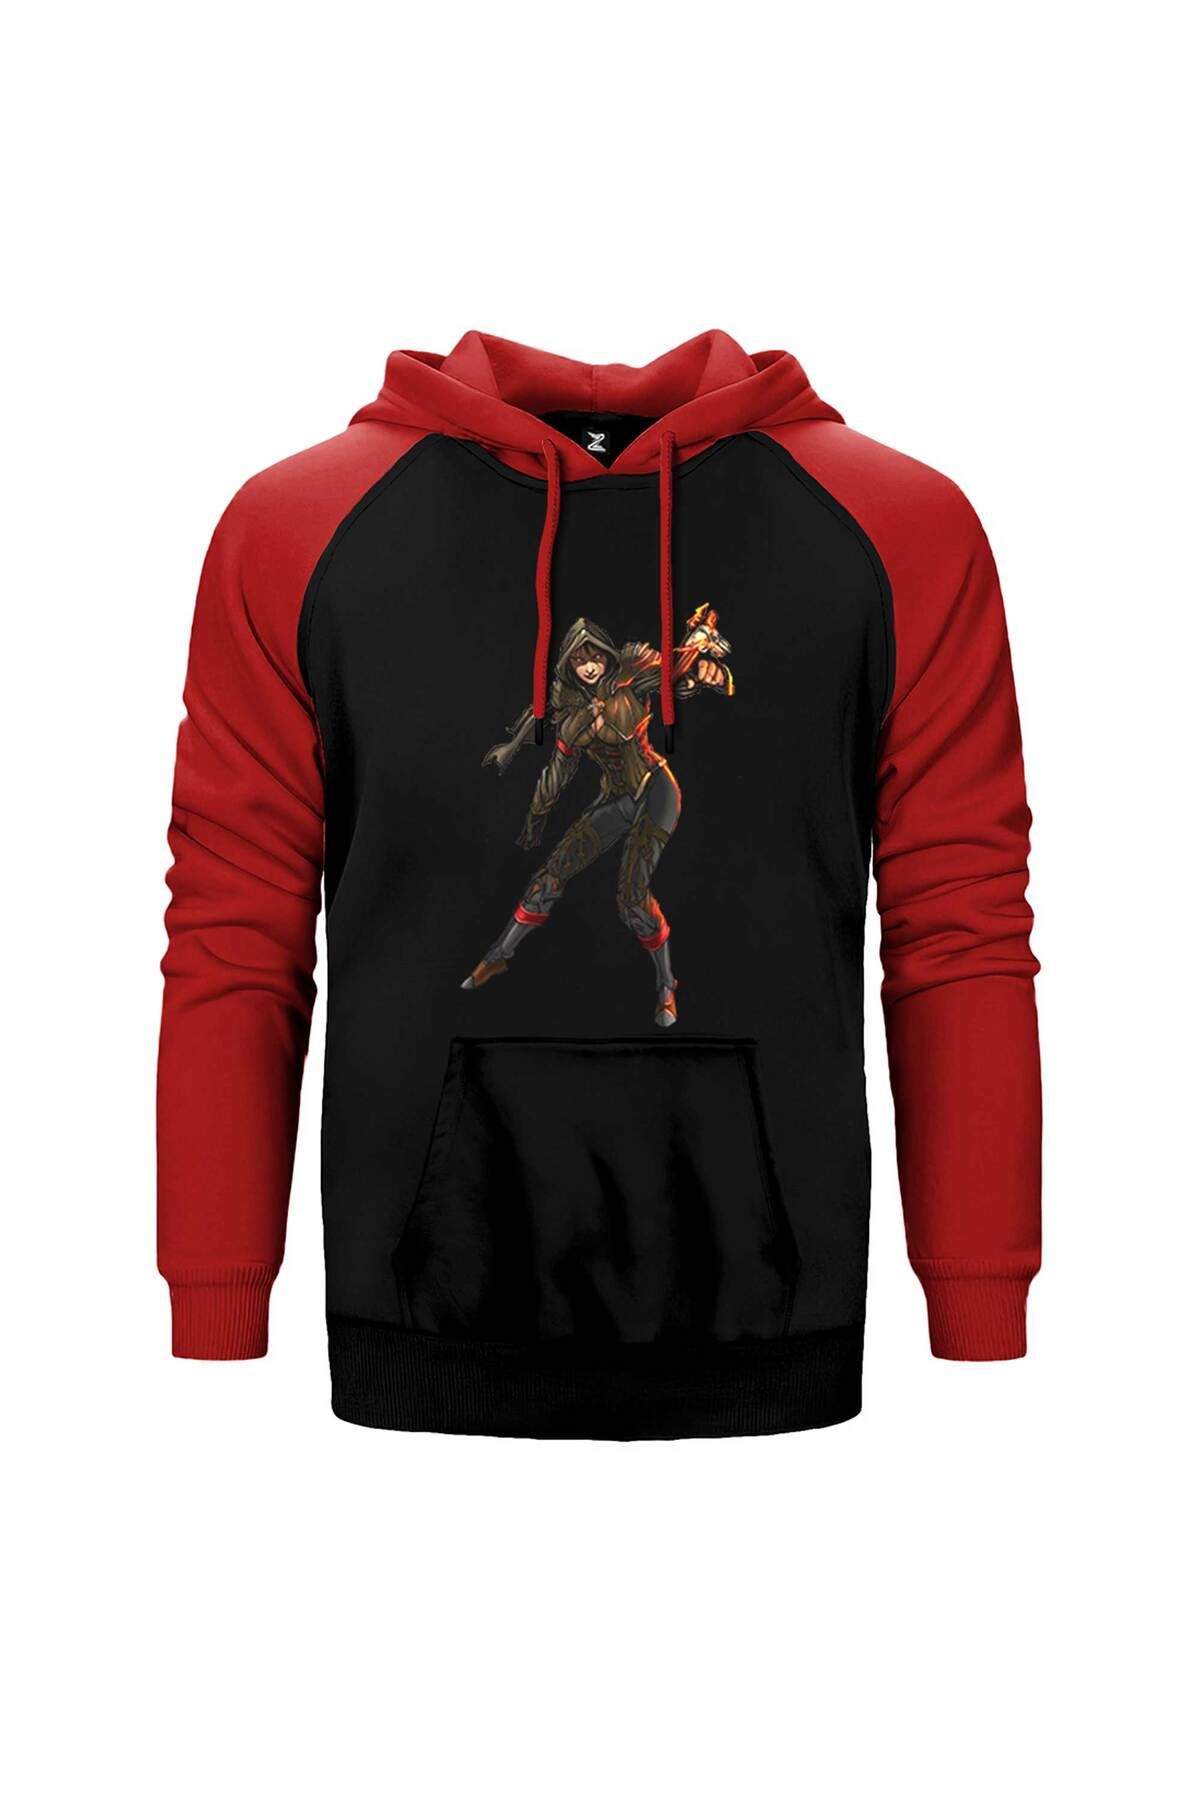 Z zepplin Diablo 3 Female Demon Hunter Kırmızı Renk Reglan Kol Kapşonlu Sweatshirt